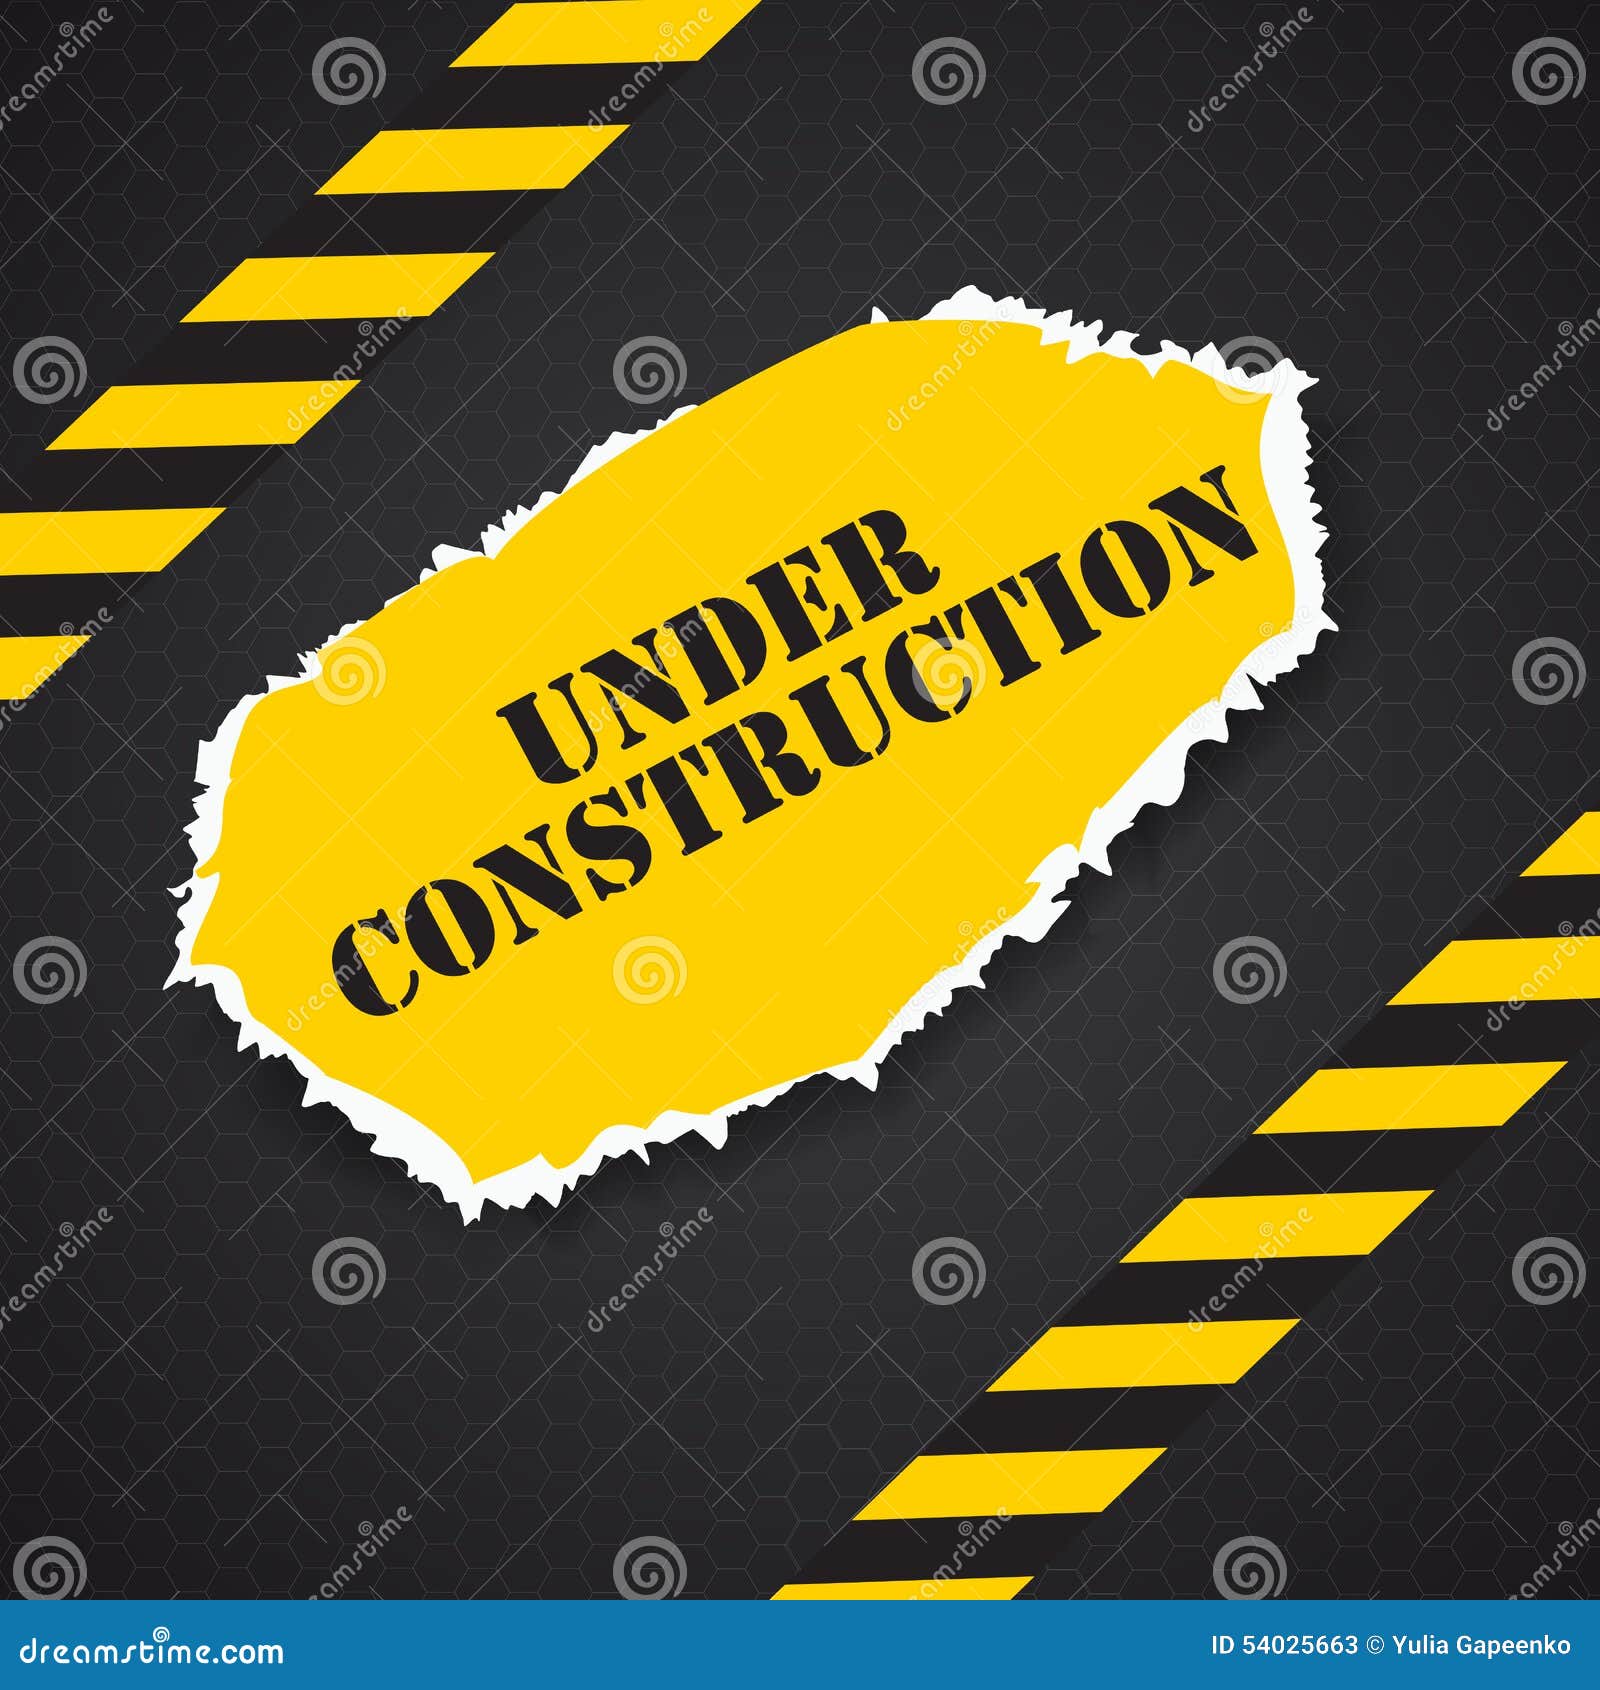 Under Construction. Vector Illustration Stock Vector - Illustration of ...